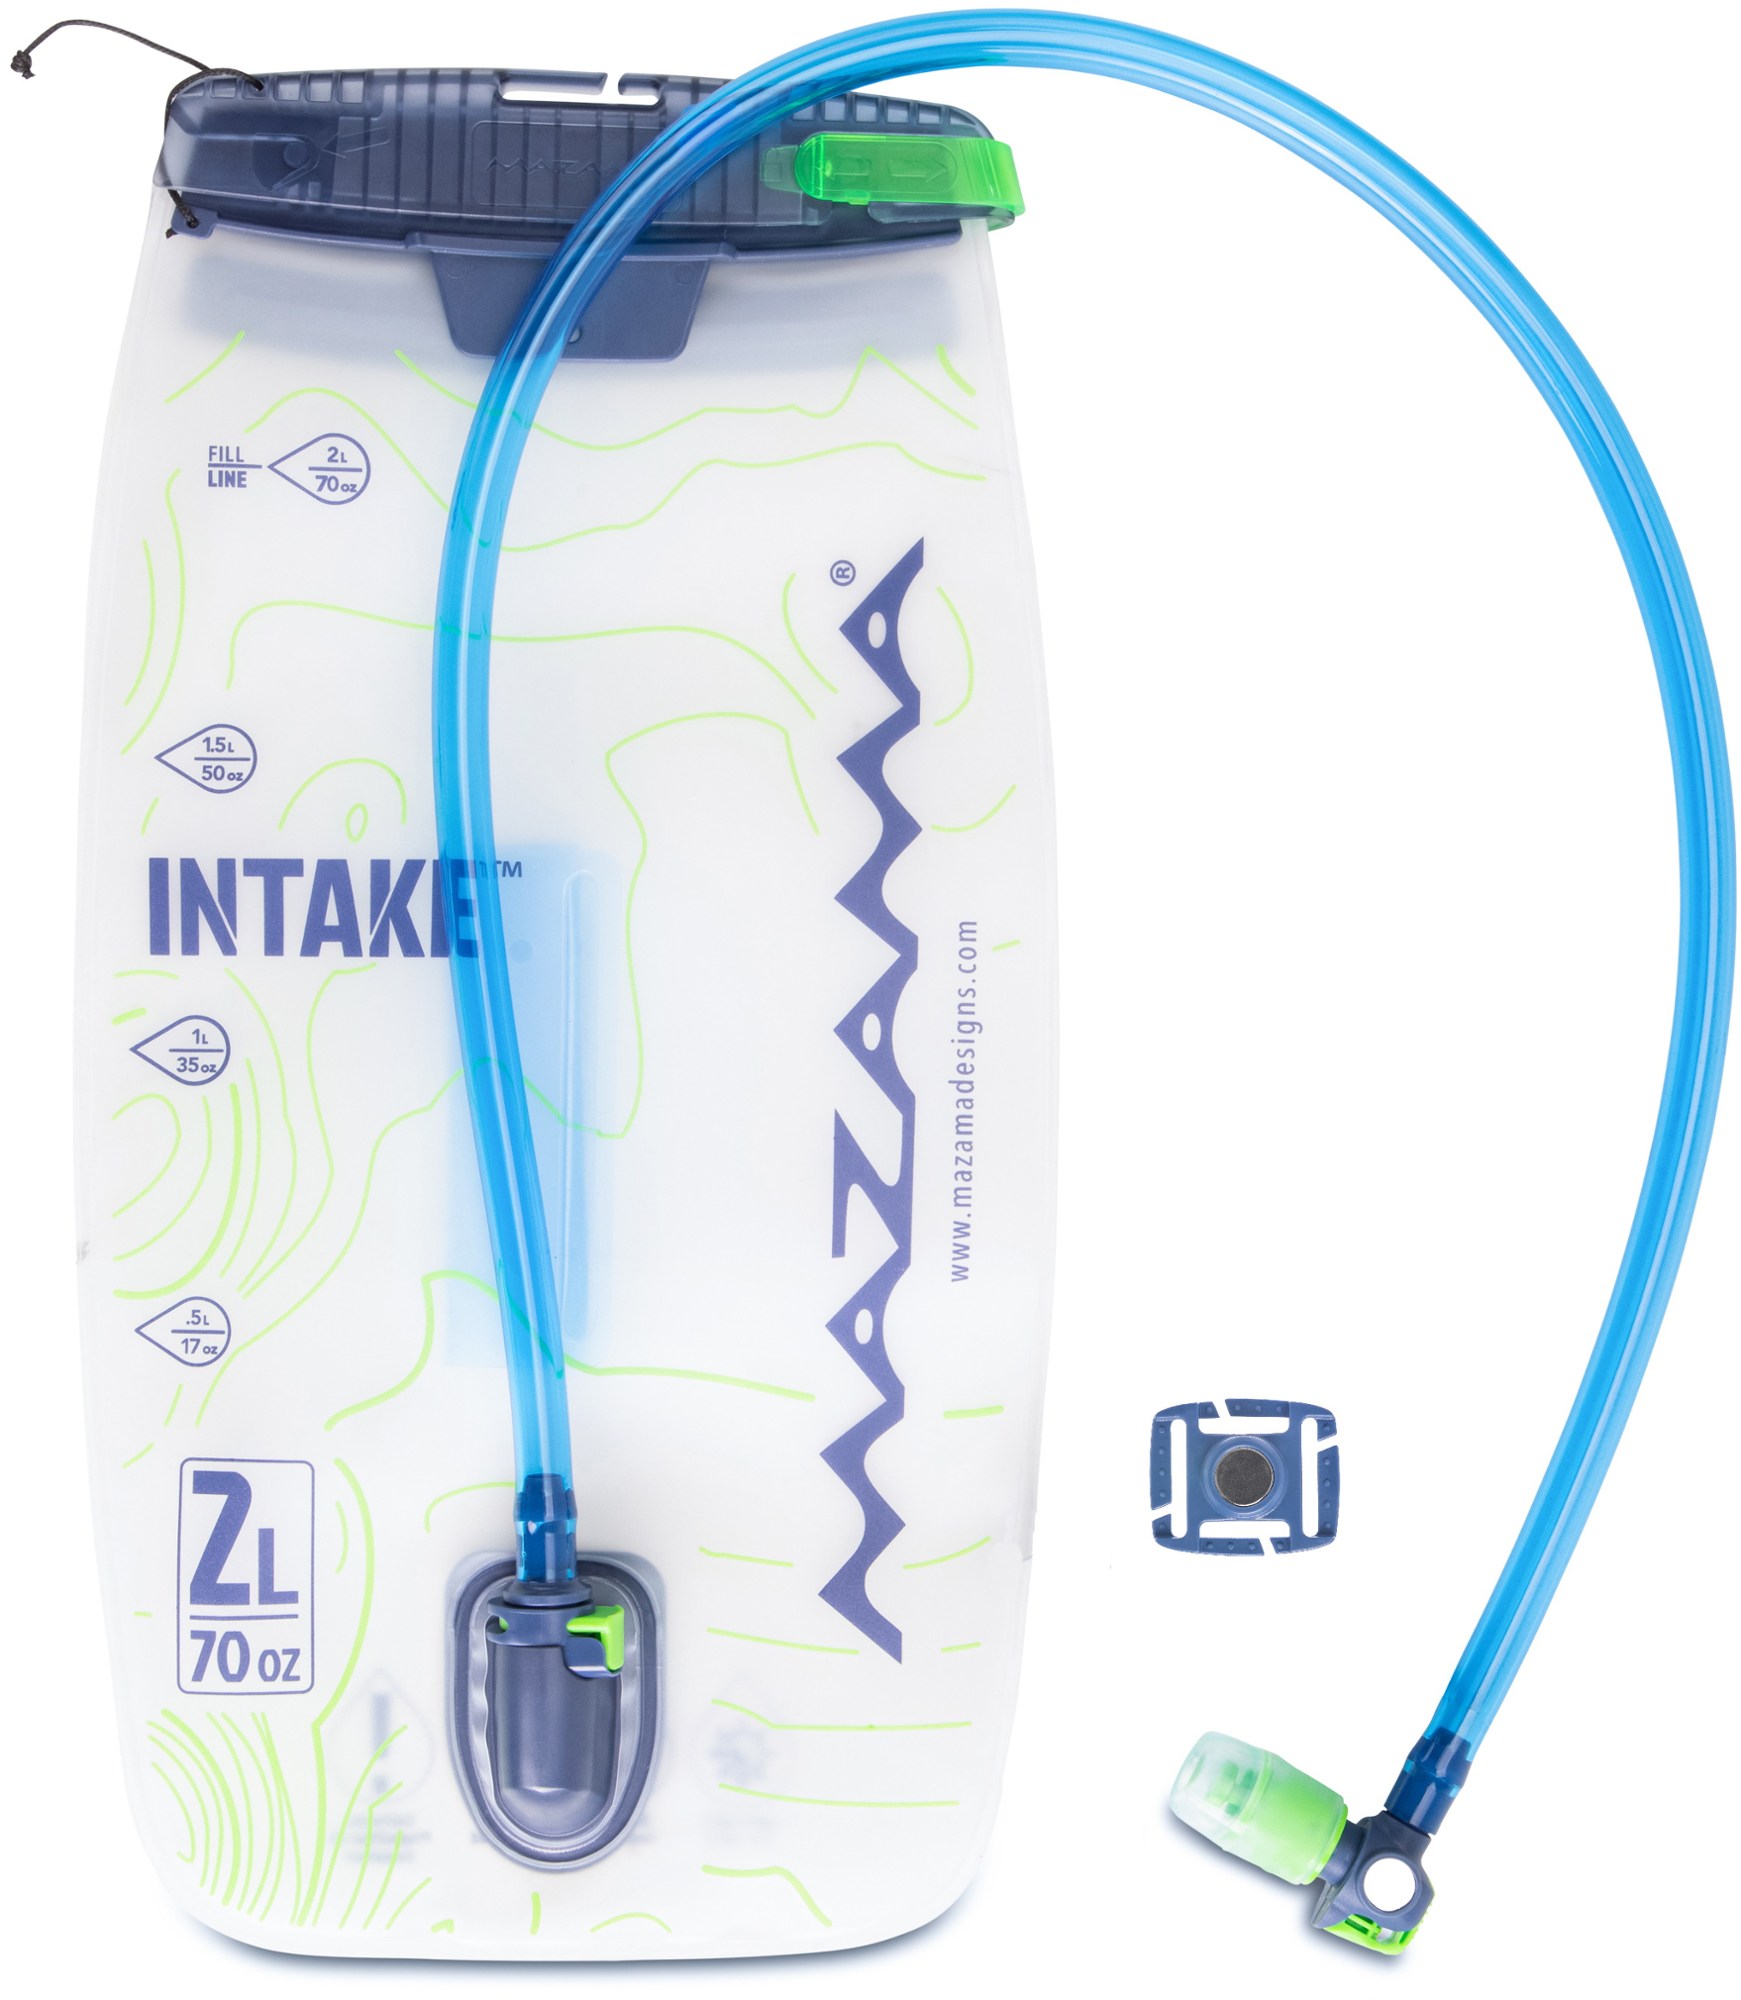 Резервуар INTAKE LT - 2 литра Mazama Designs, синий